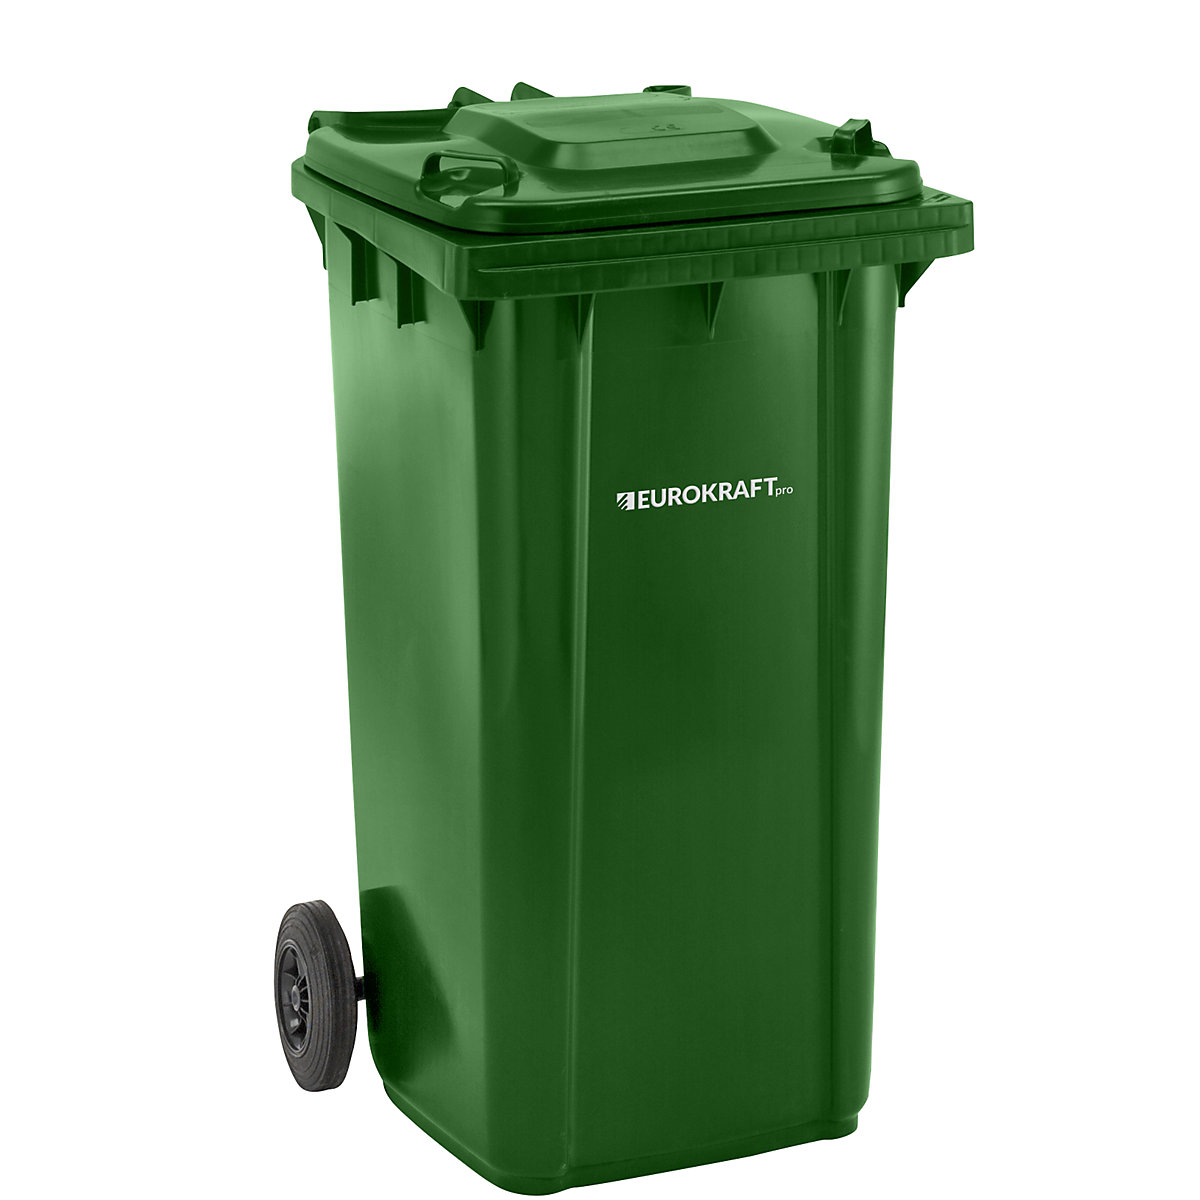 DIN EN 840 szabvány szerinti hulladékgyűjtő – eurokraft pro, űrtartalom 240 l, szé x ma x mé 580 x 1100 x 740 mm, zöld-4